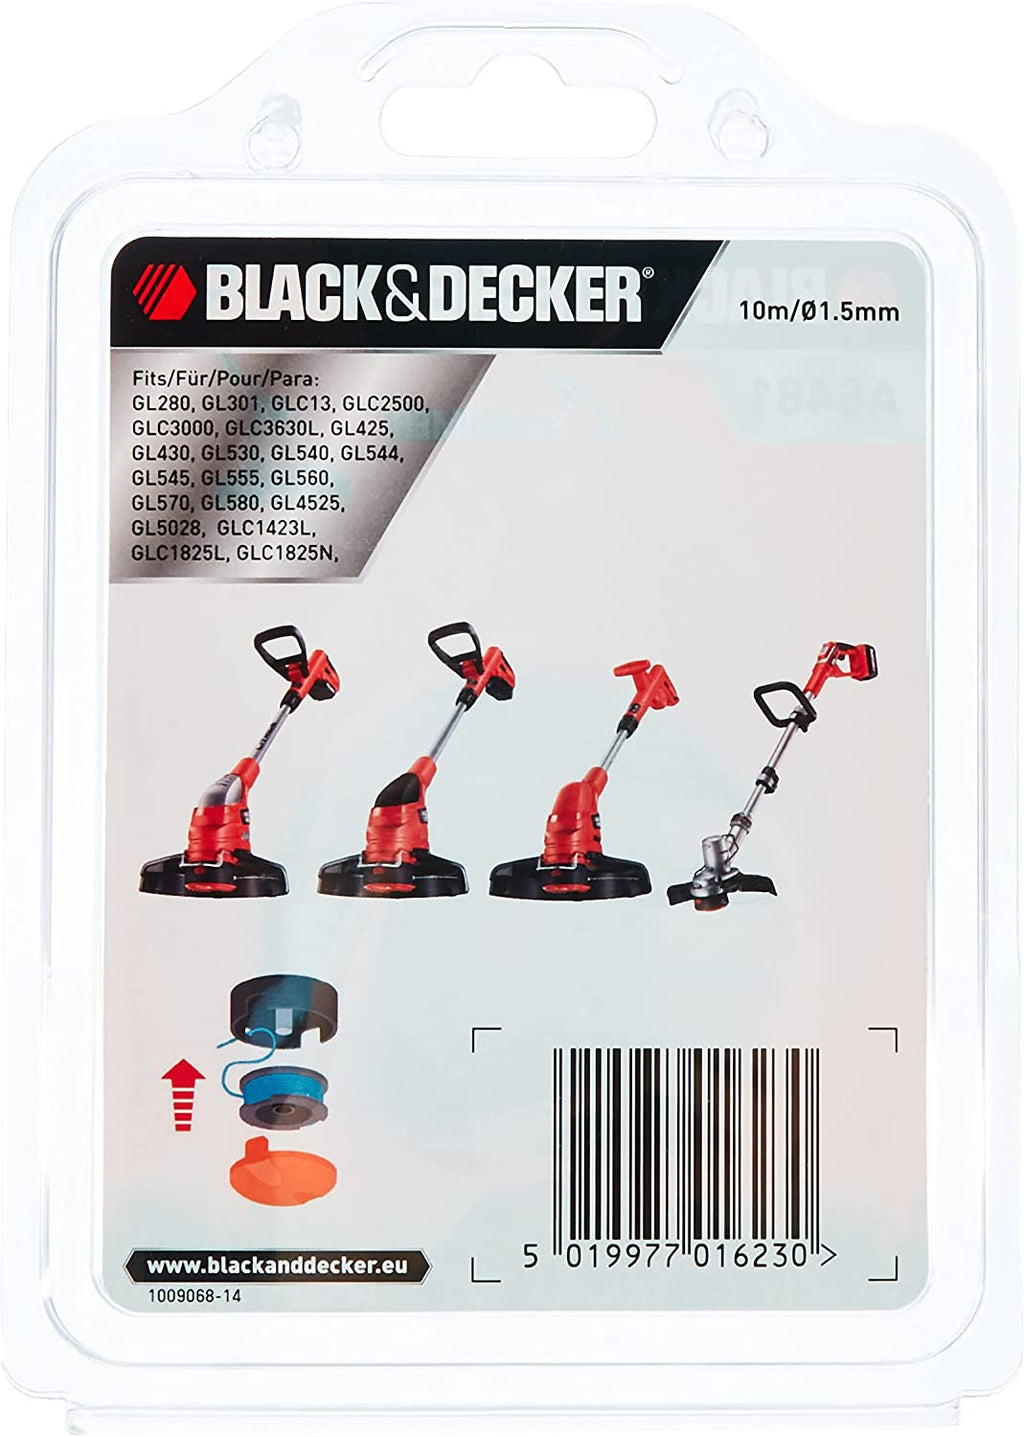 Black & Decker Strimmer Spool & Line For Gl4525 Gl5028 Glc1825